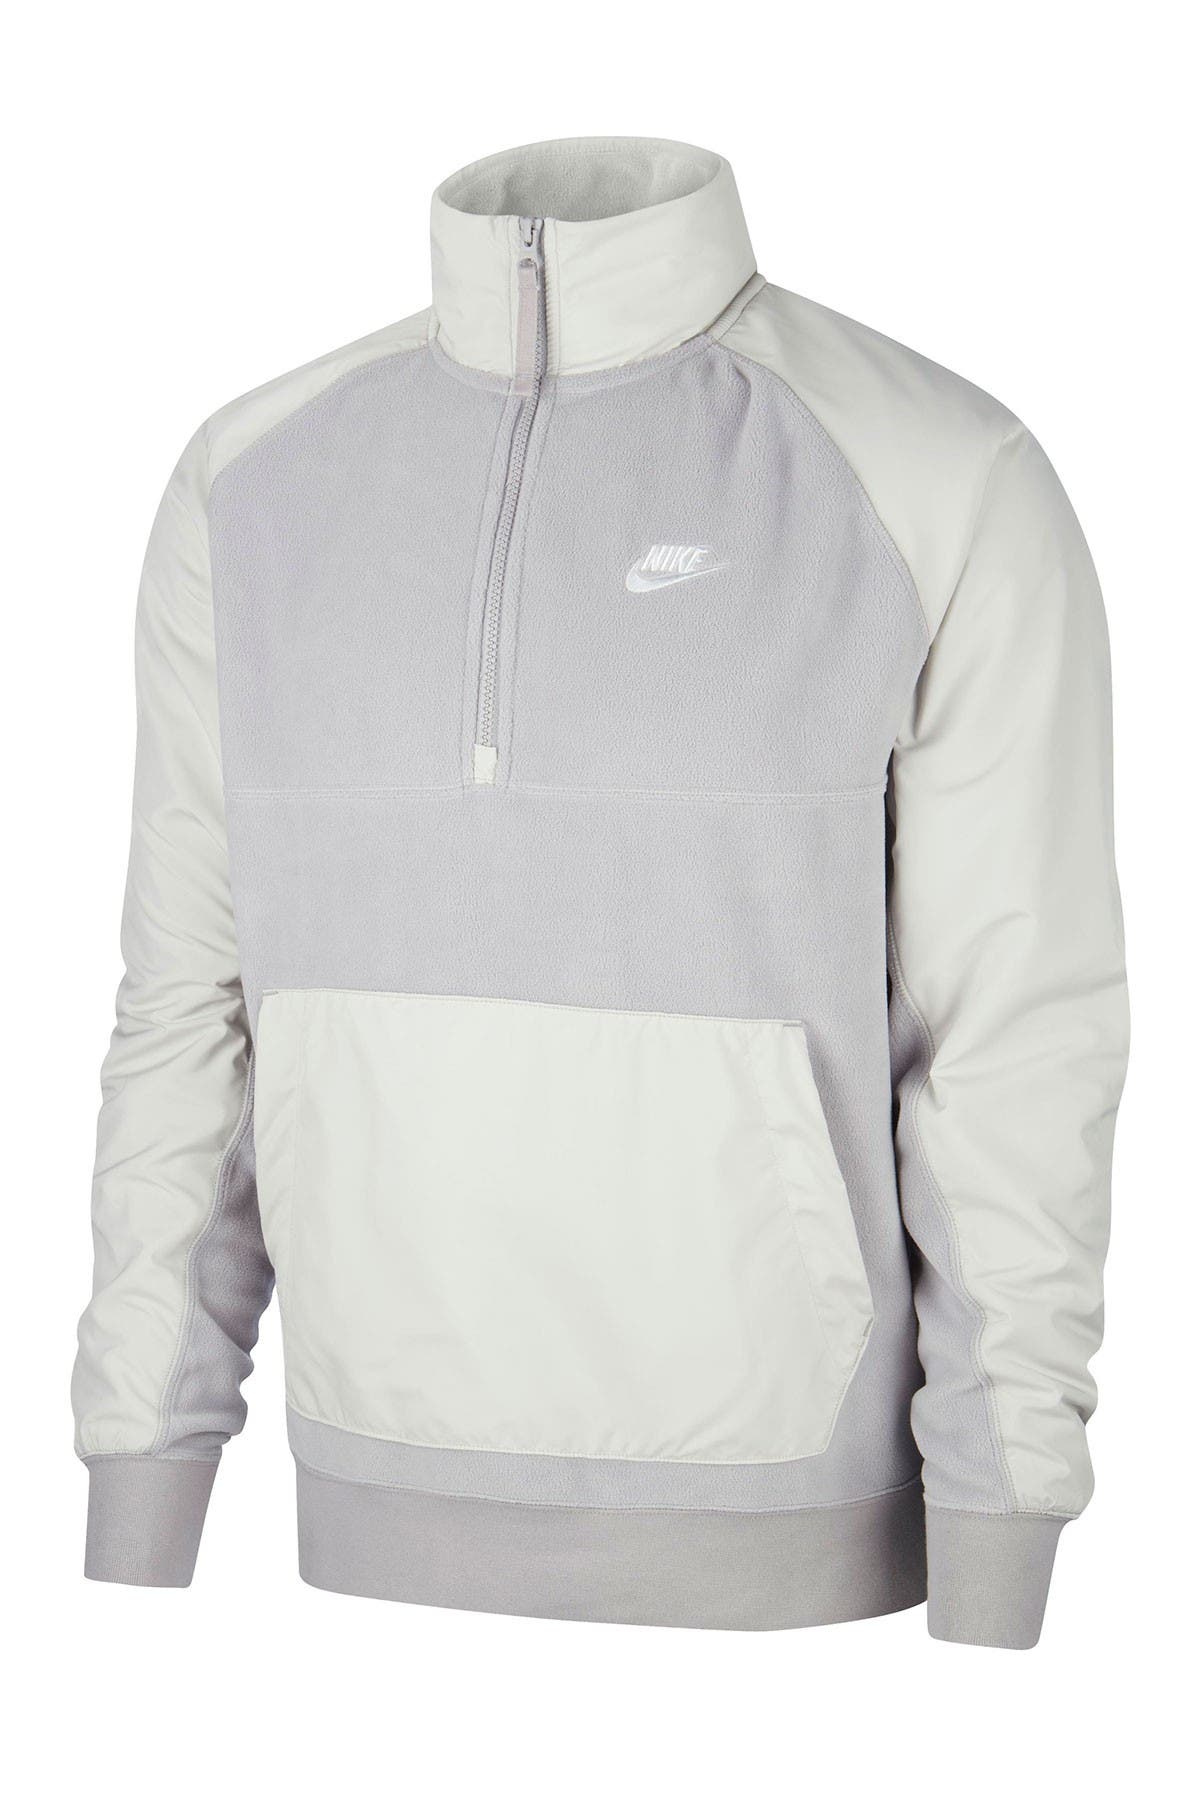 Nike | Half-Zip Winter Pullover 